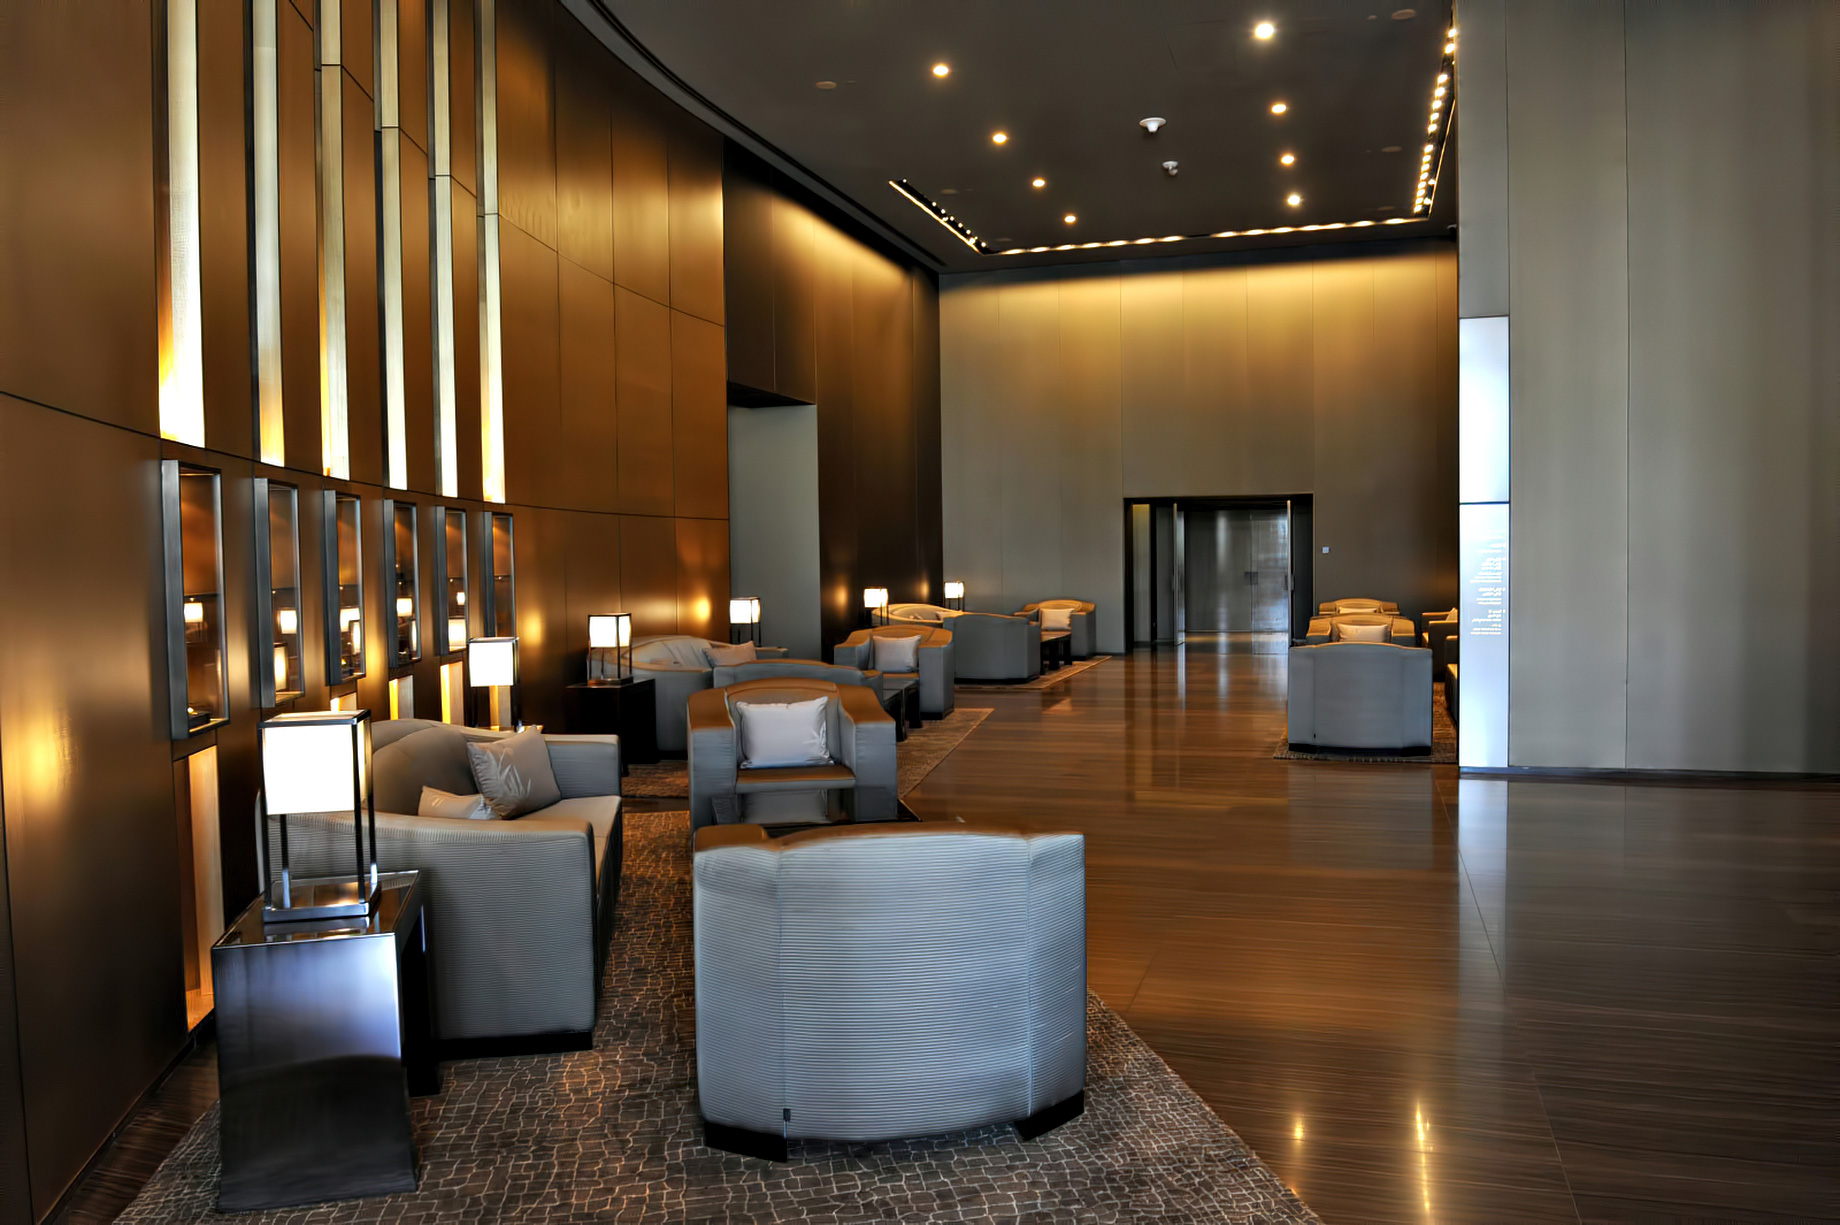 Armani Hotel Dubai - Burj Khalifa, Dubai, UAE - Armani Hotel Interior Entrance Lounge